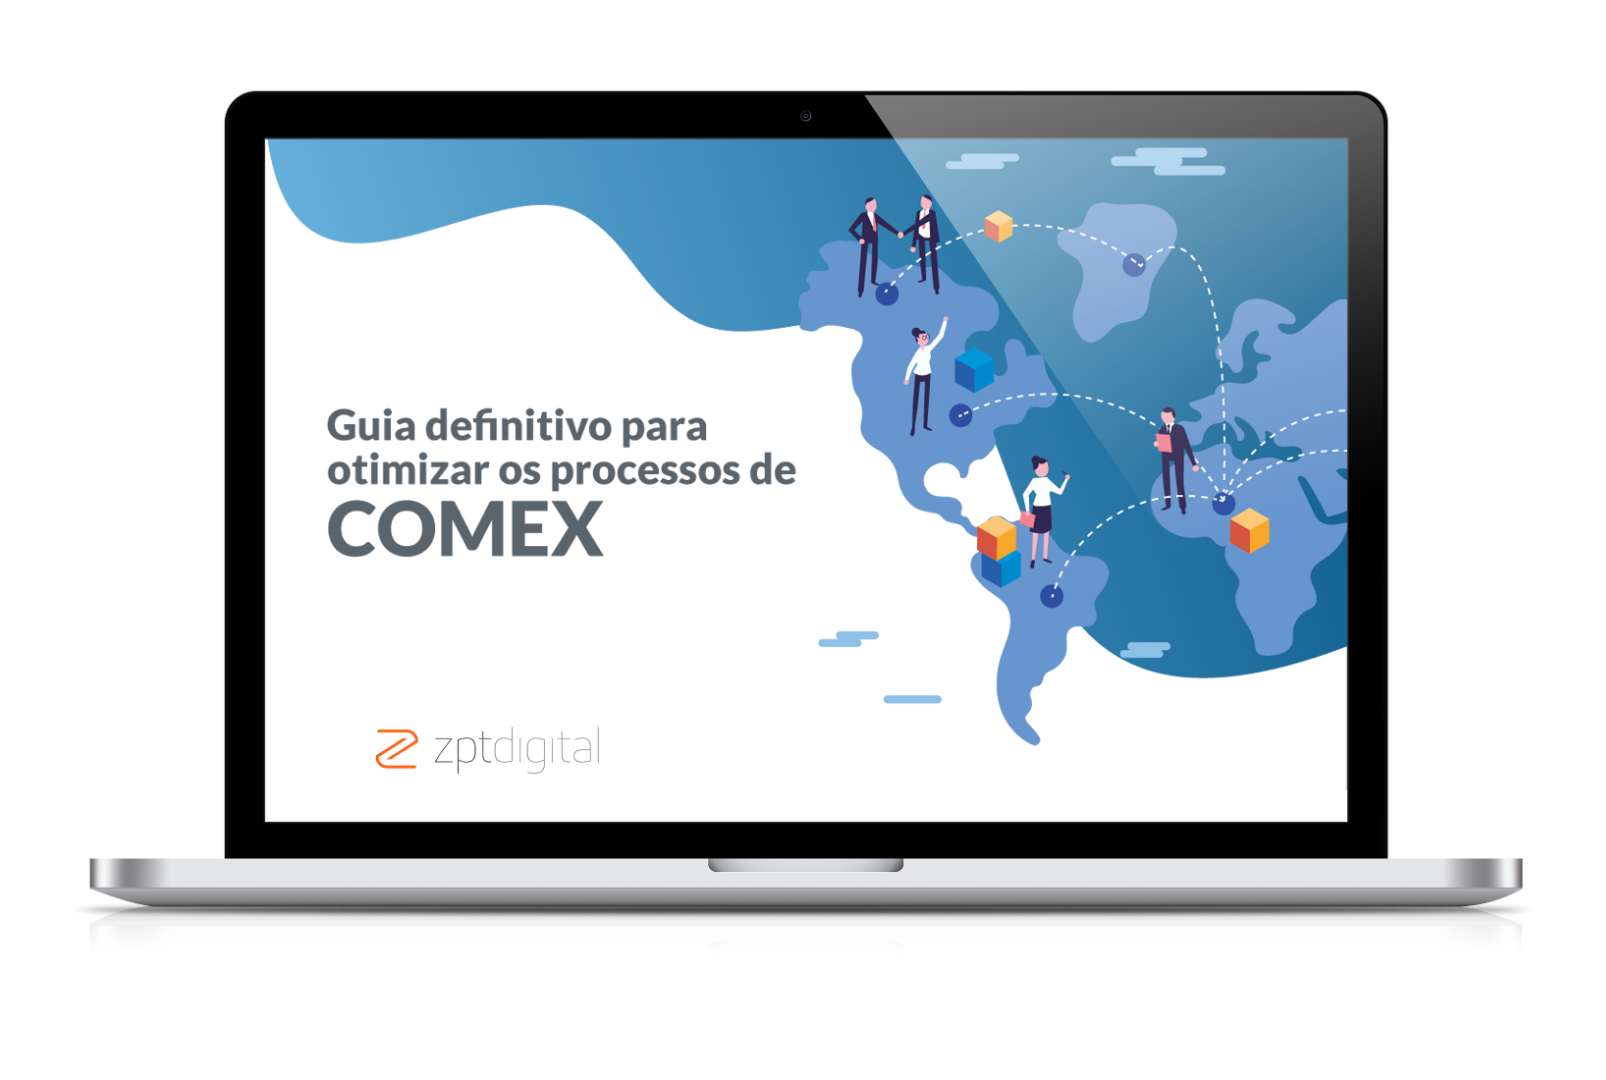 Guia definitivo: Saiba tudo sobre como otimizar os processos de COMEX!